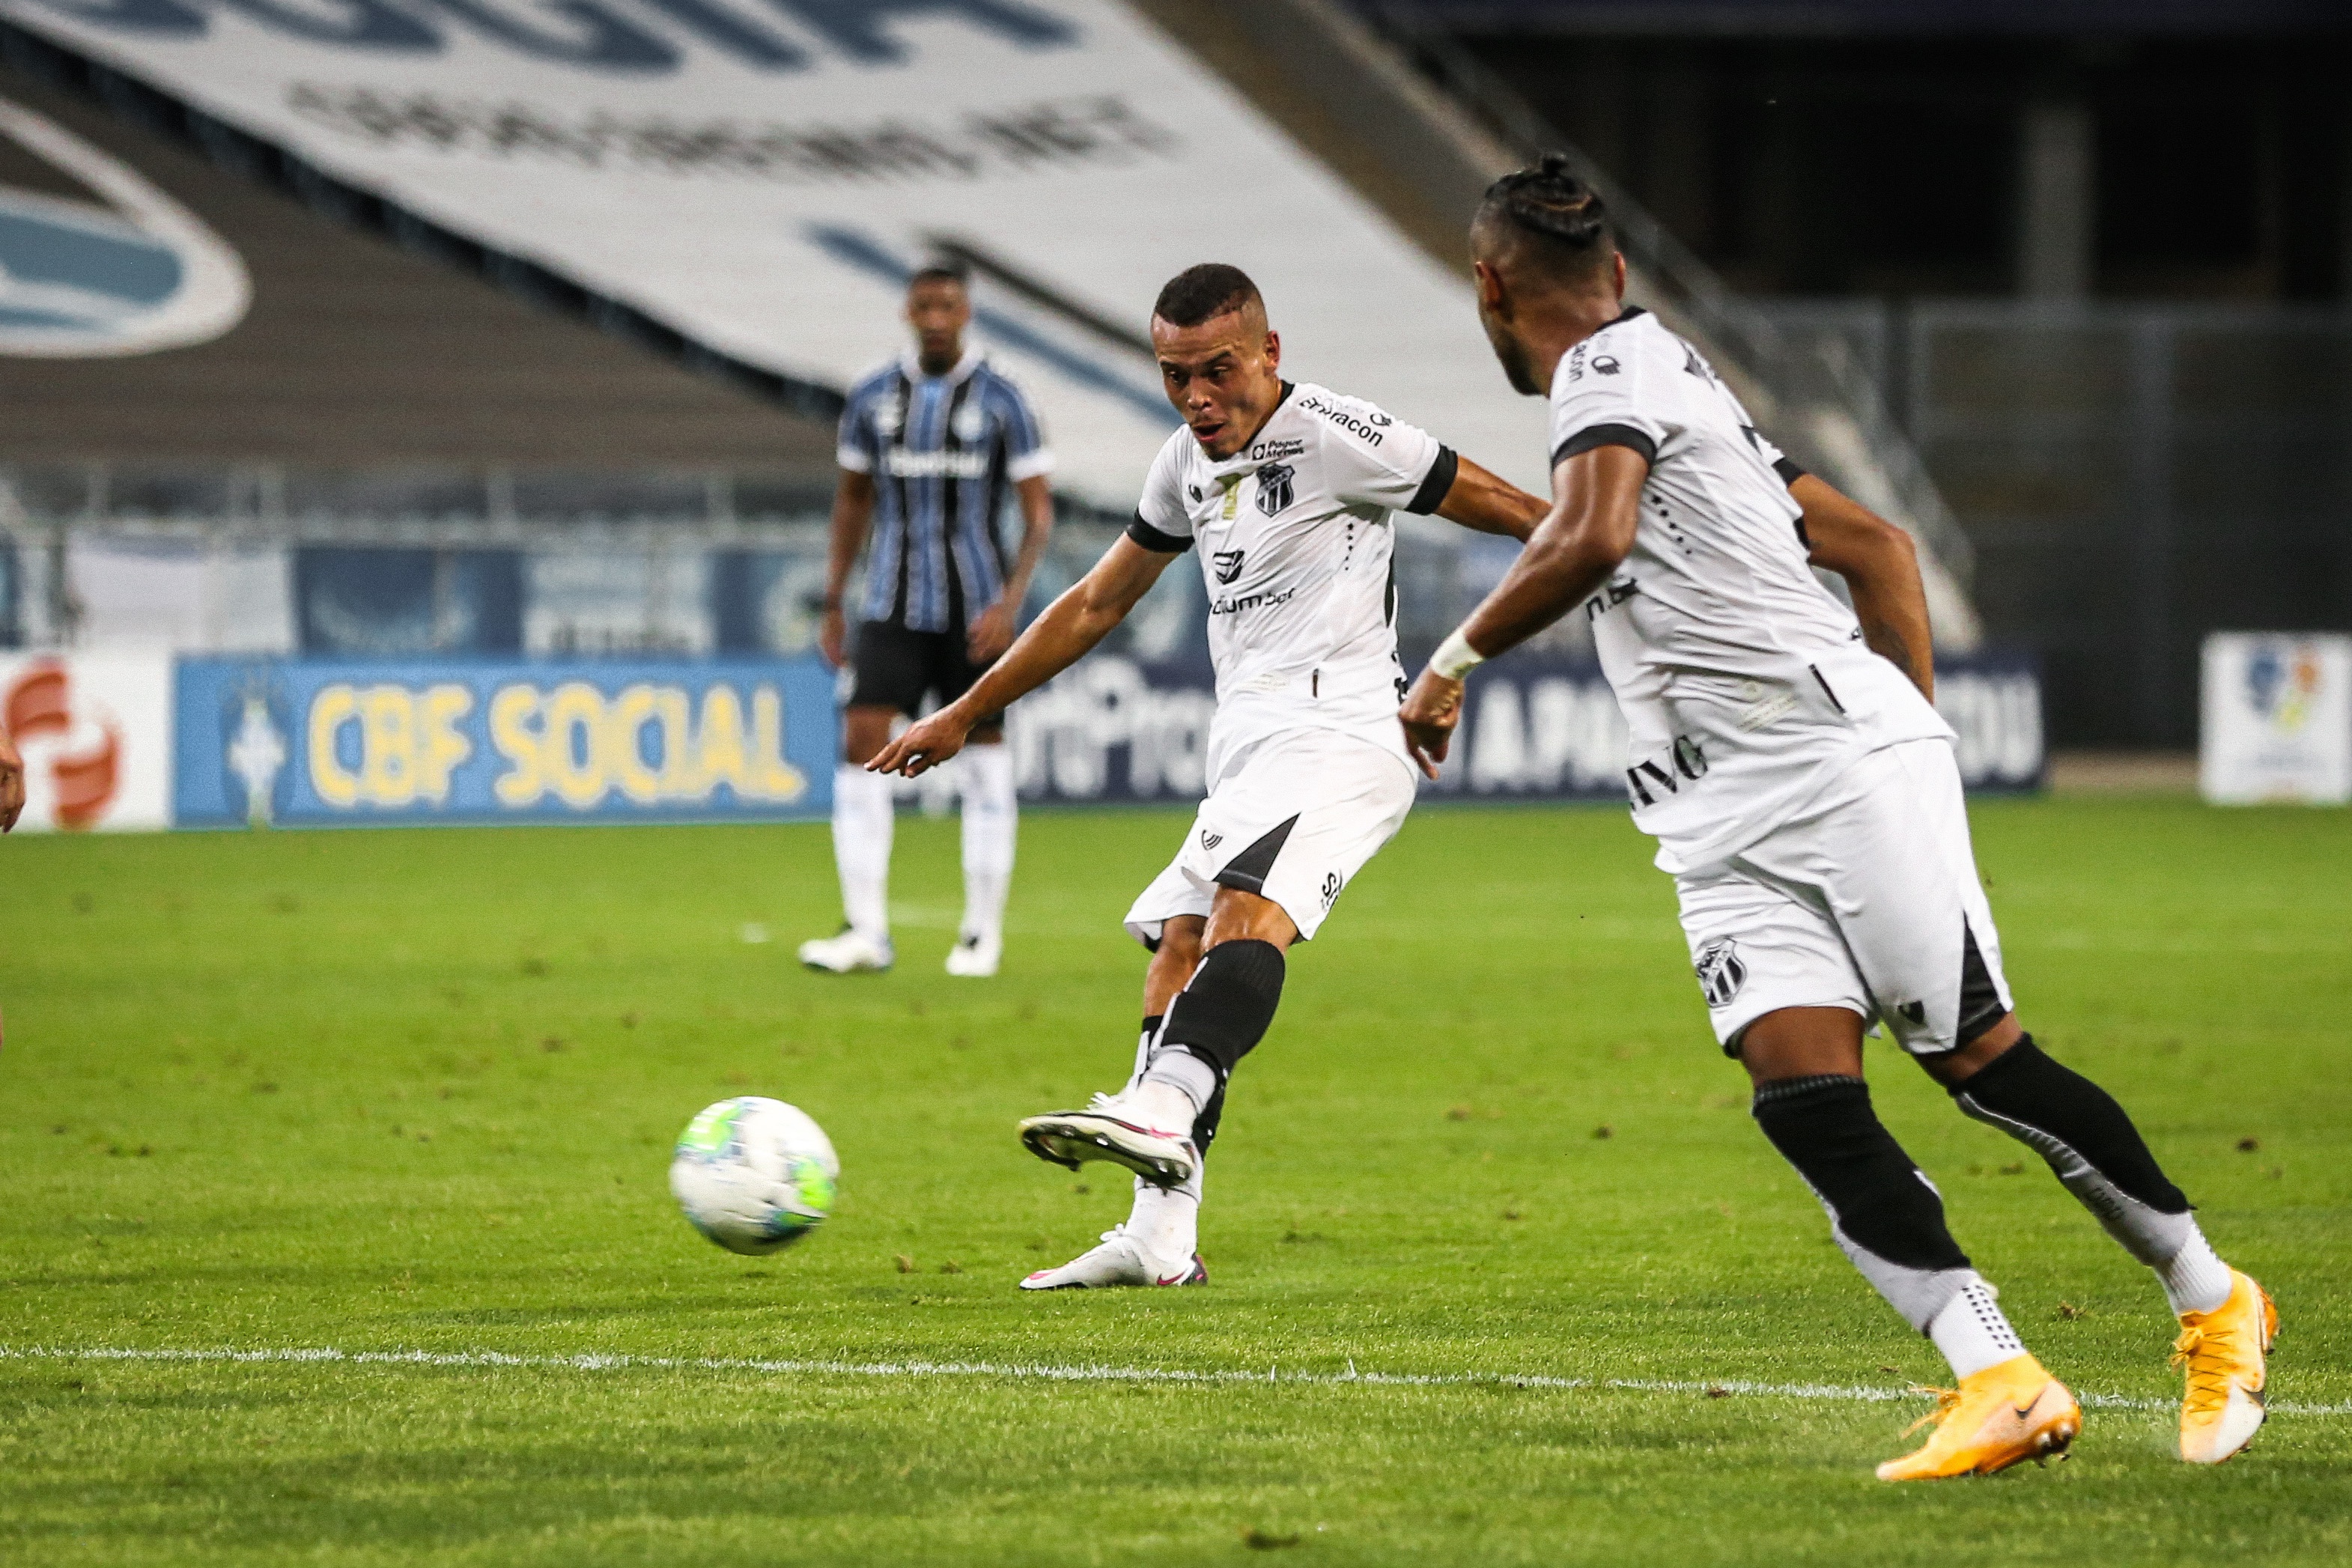 Em Porto Alegre, Kelvyn e Tiago marcam, mas Ceará perde para o Grêmio por 4 a 2